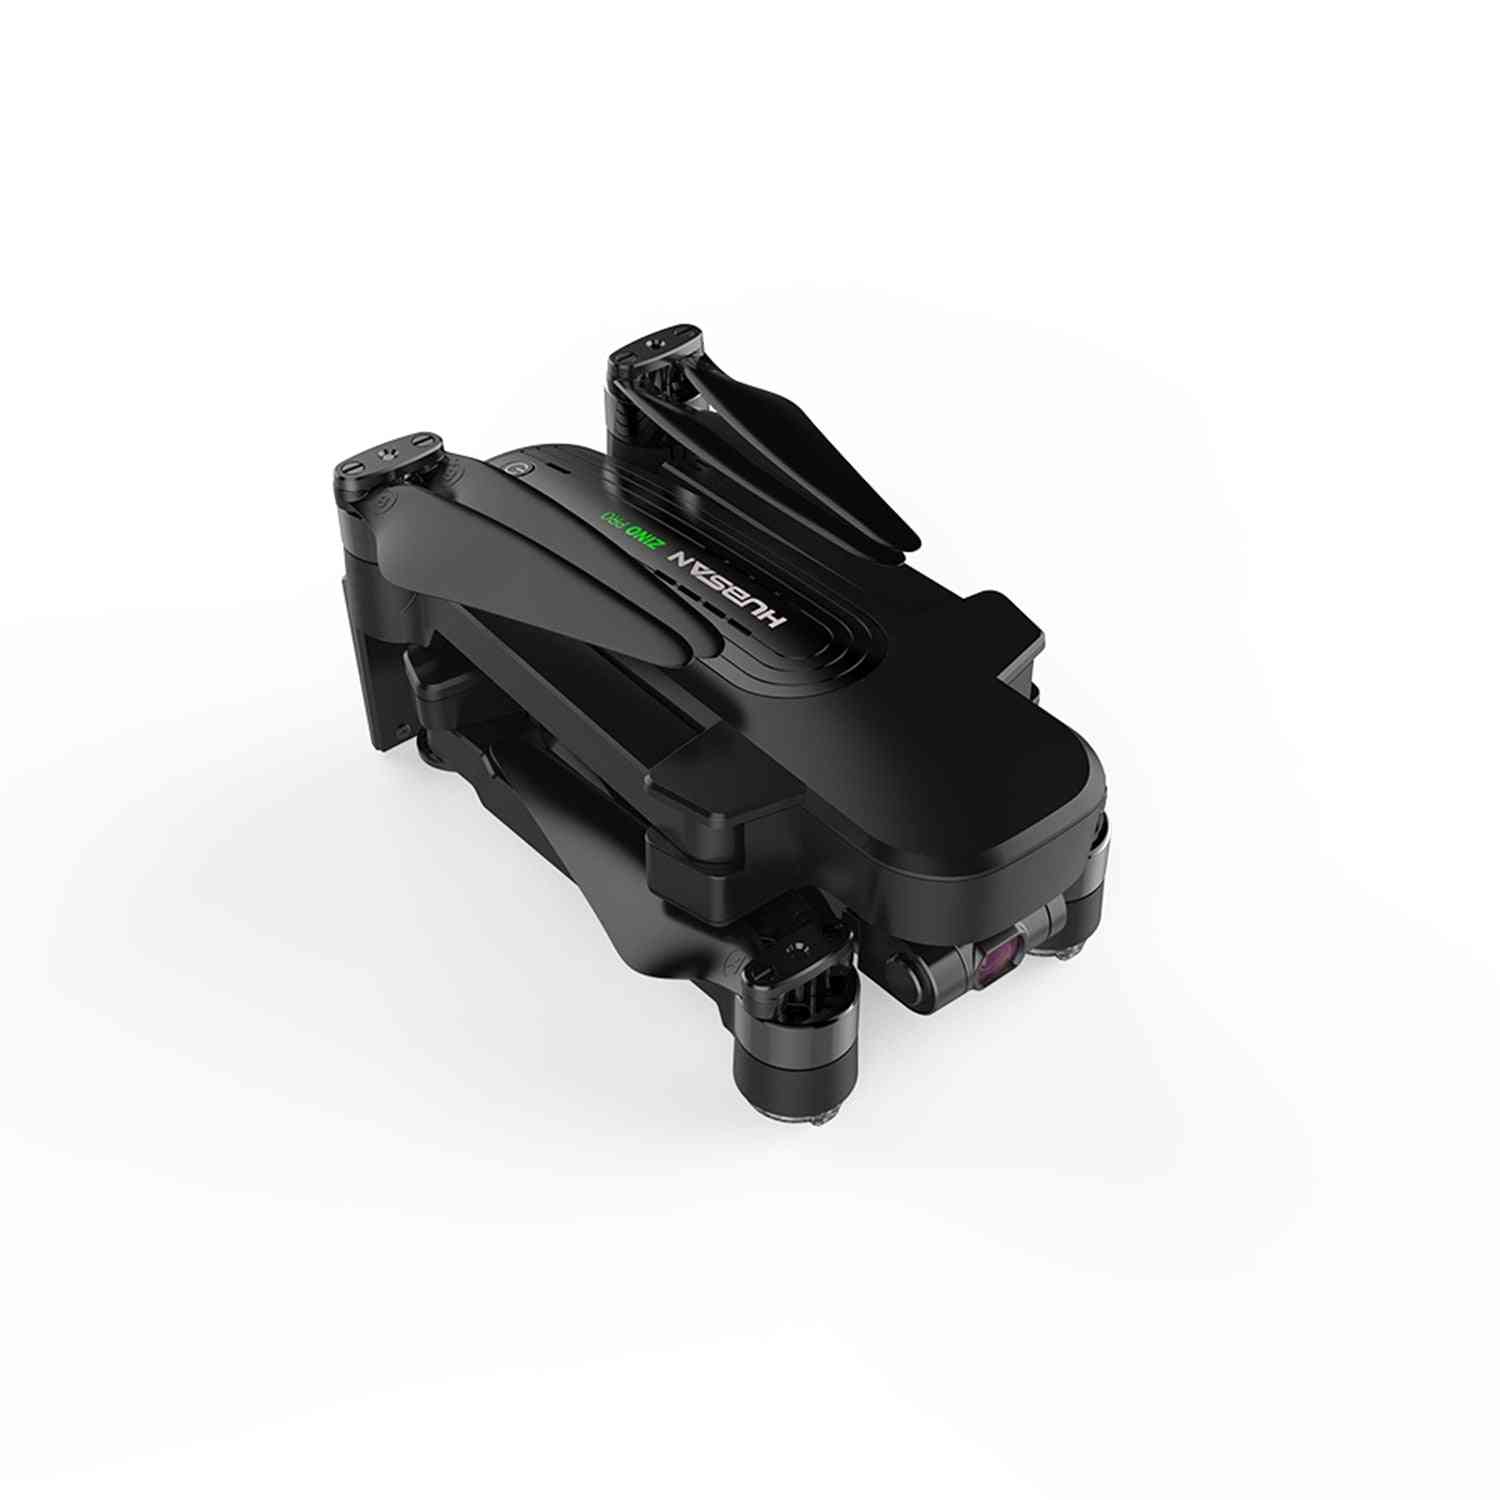 H117s zino - drone gps com câmera 4k, 5,8g, 1km, quadricóptero de drone com controle remoto de gimbal de 3 eixos, dron brushless rtf - zino h117s